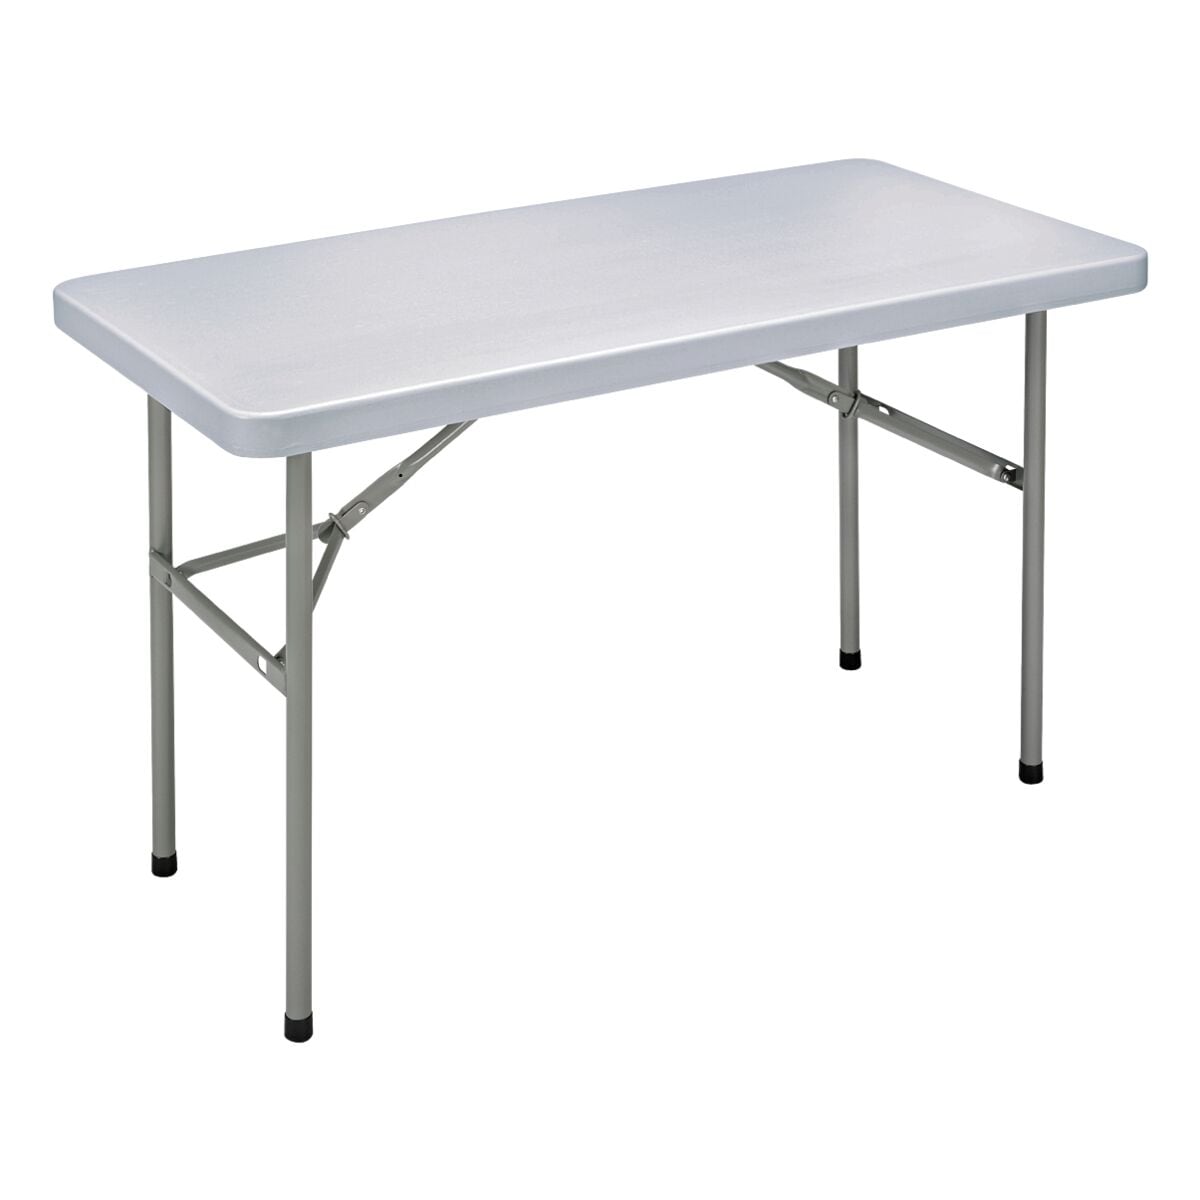 SODEMATUB Table pliante 140x70 cm piètement couleur alu - acheter à prix  économique chez OTTO Office.